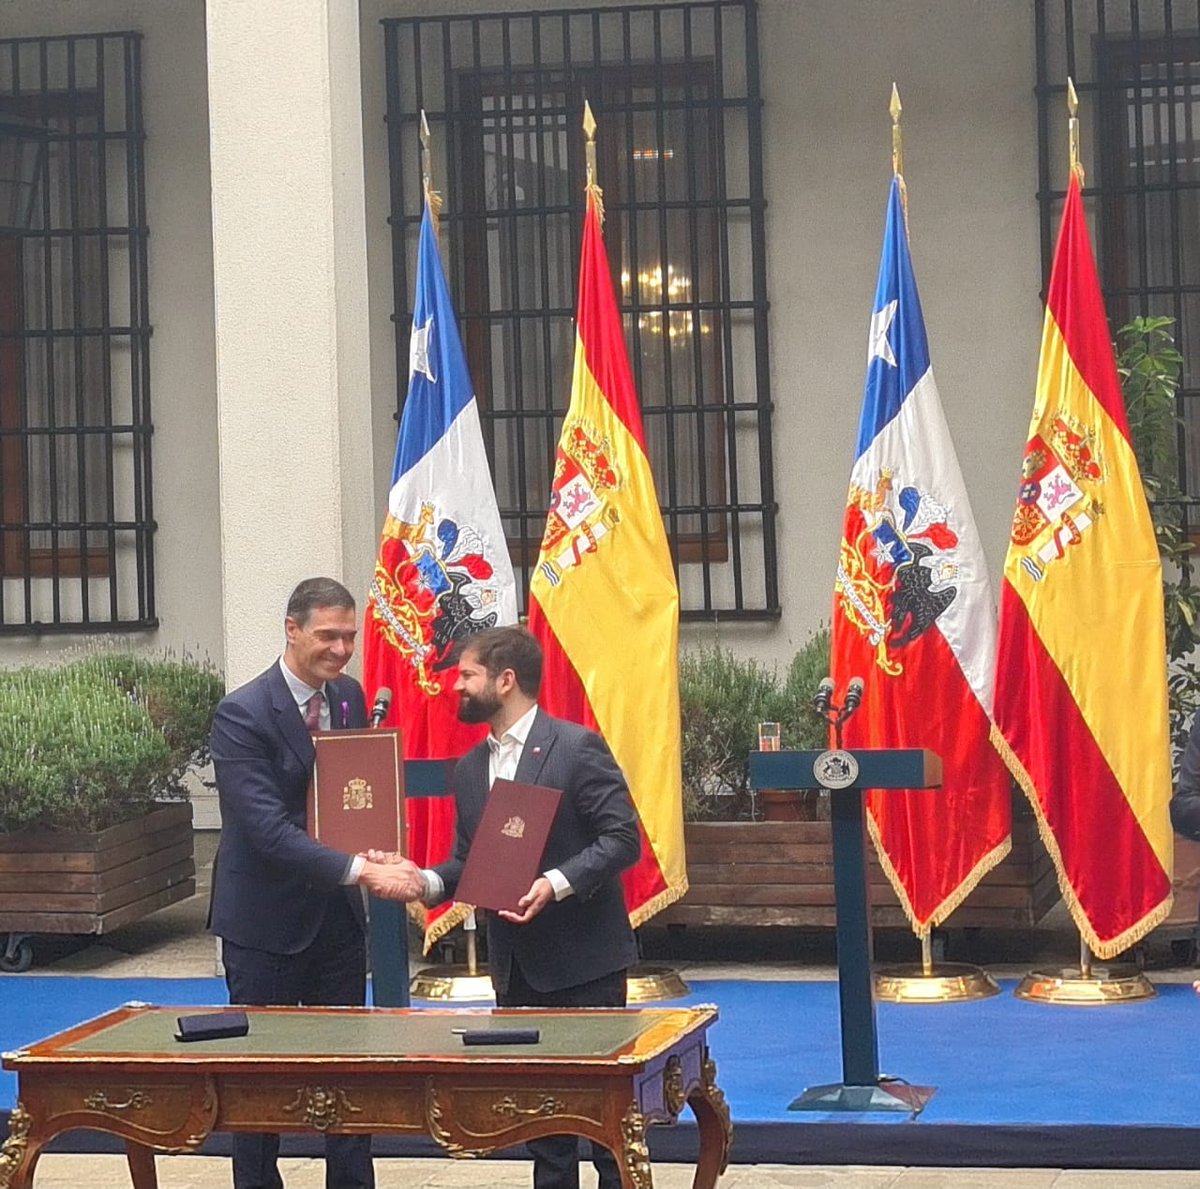 Hace una semana los Presidentes Sánchez y Boric rubricaron la Alianza Estratégica Renovada 🇨🇱 🇪🇸 que incluye nuevas prioridades compartidas como la sostenibilidad medioambiental, la igualdad de género, la diplomacia feminista, la innovación y la seguridad.